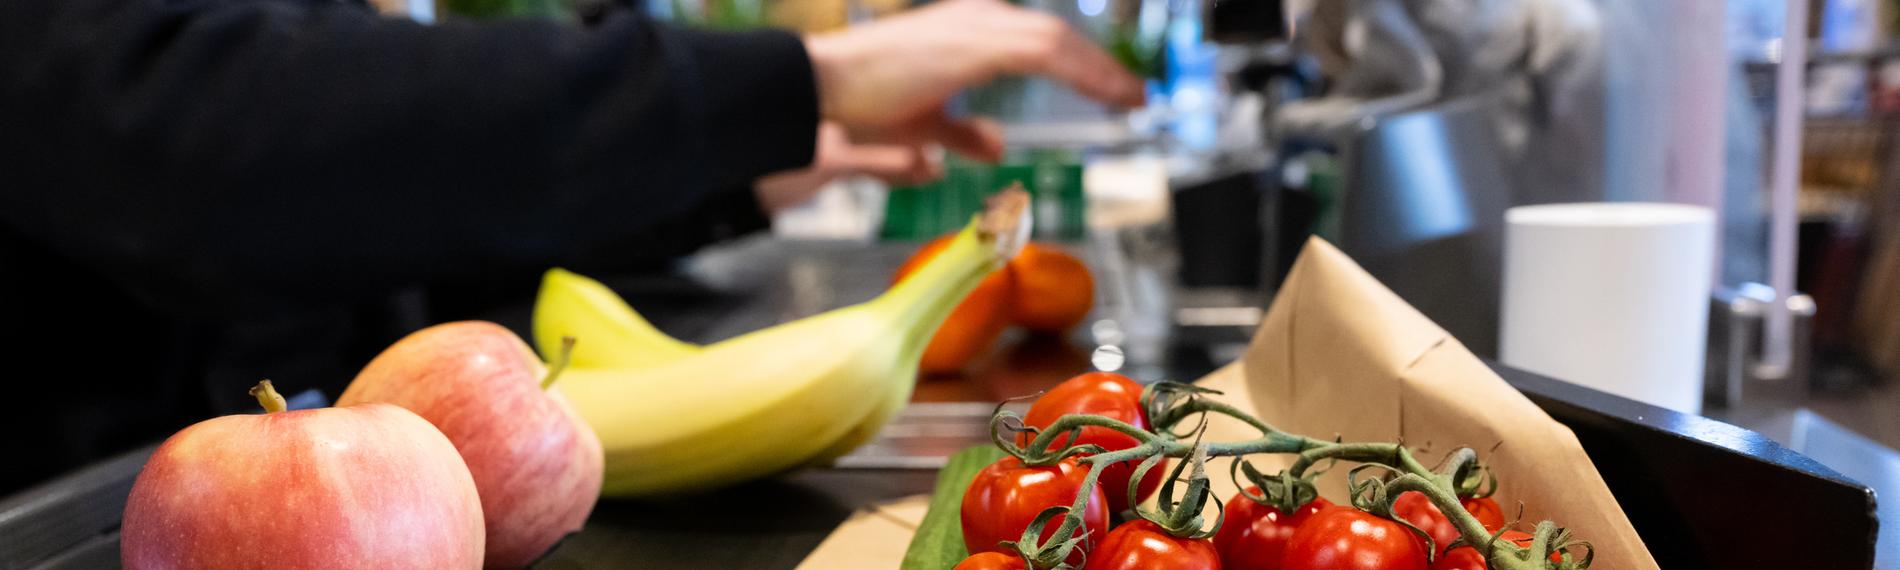 Lebensmittel liegen in einem Supermarkt an der Kasse auf dem Band, aufgenommen am 18.01.2023 in Neubiberg